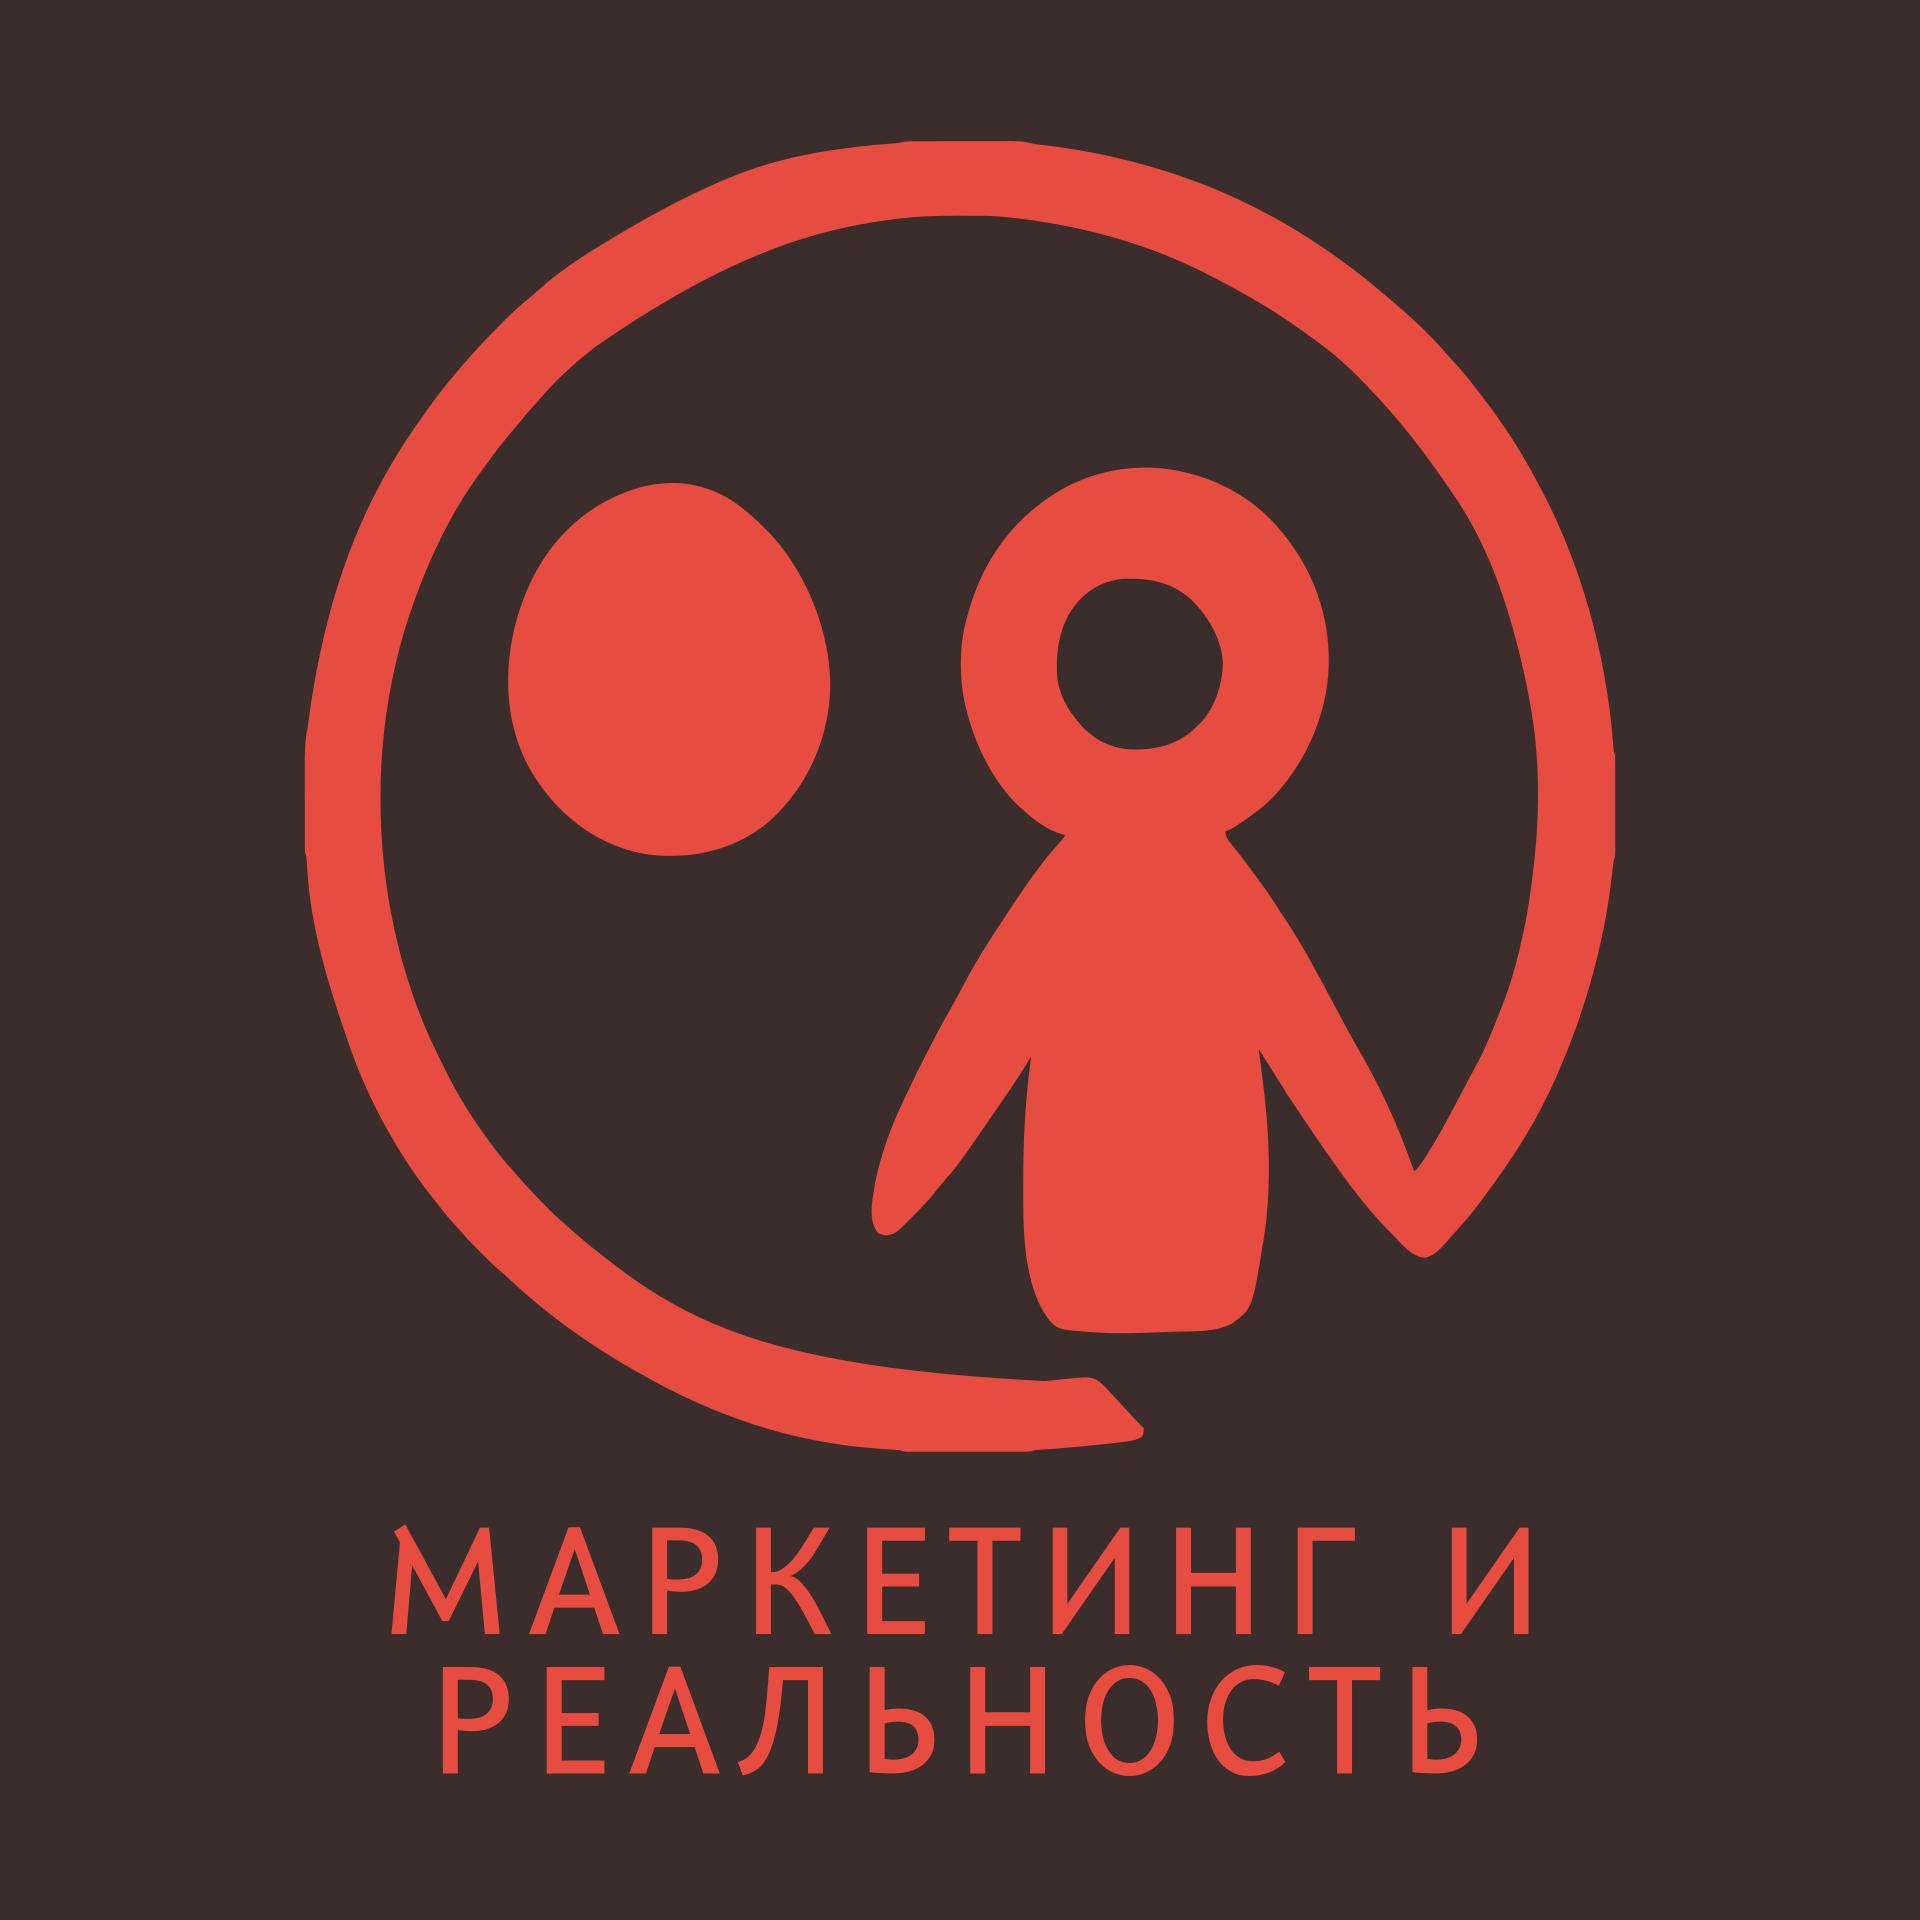 Про маркетинг в кофейном бизнесе без цензуры (18+). Дмитрий Мо.